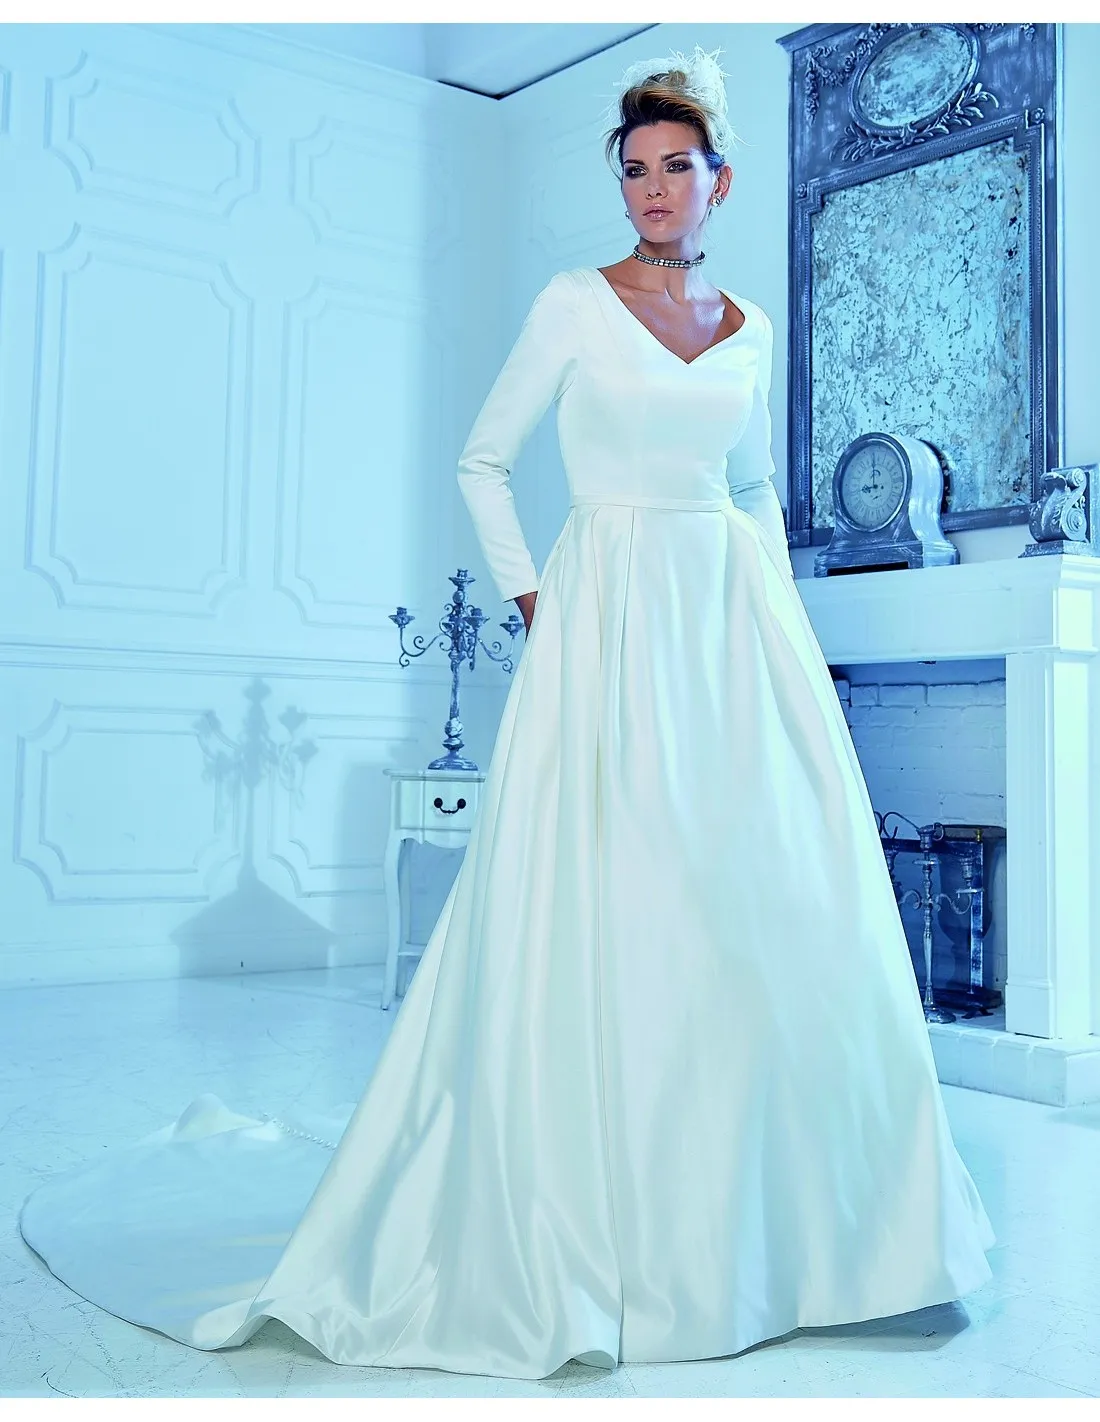 A-line Атласные скромные свадебные платья с карманами с длинными рукавами V-образным вырезом на спине Простой кантри-вестерн LDS Свадебное платье со скидкой